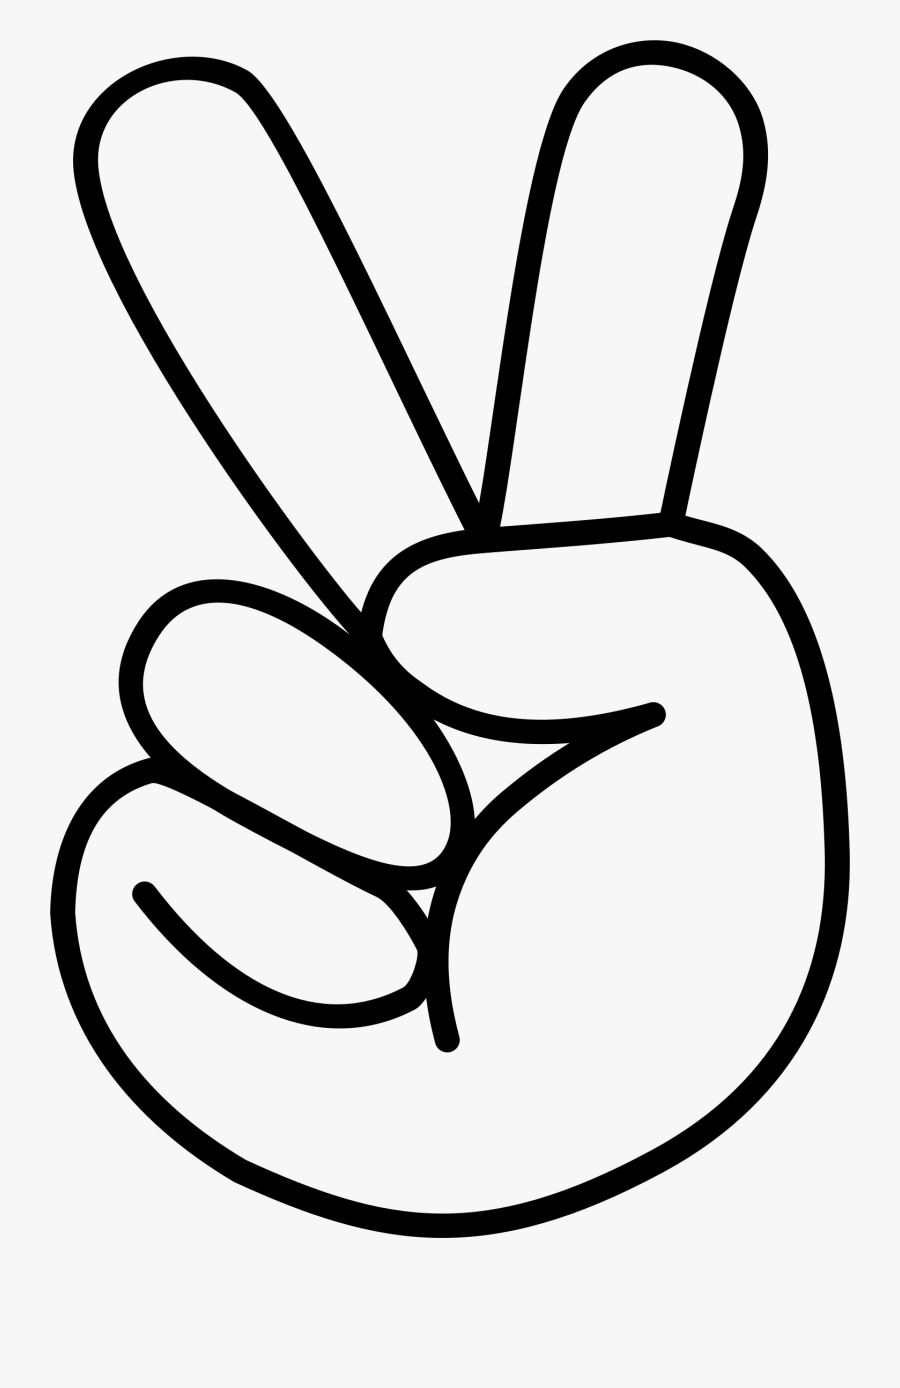 Clipart - Finger Peace Sign Clipart, Transparent Clipart